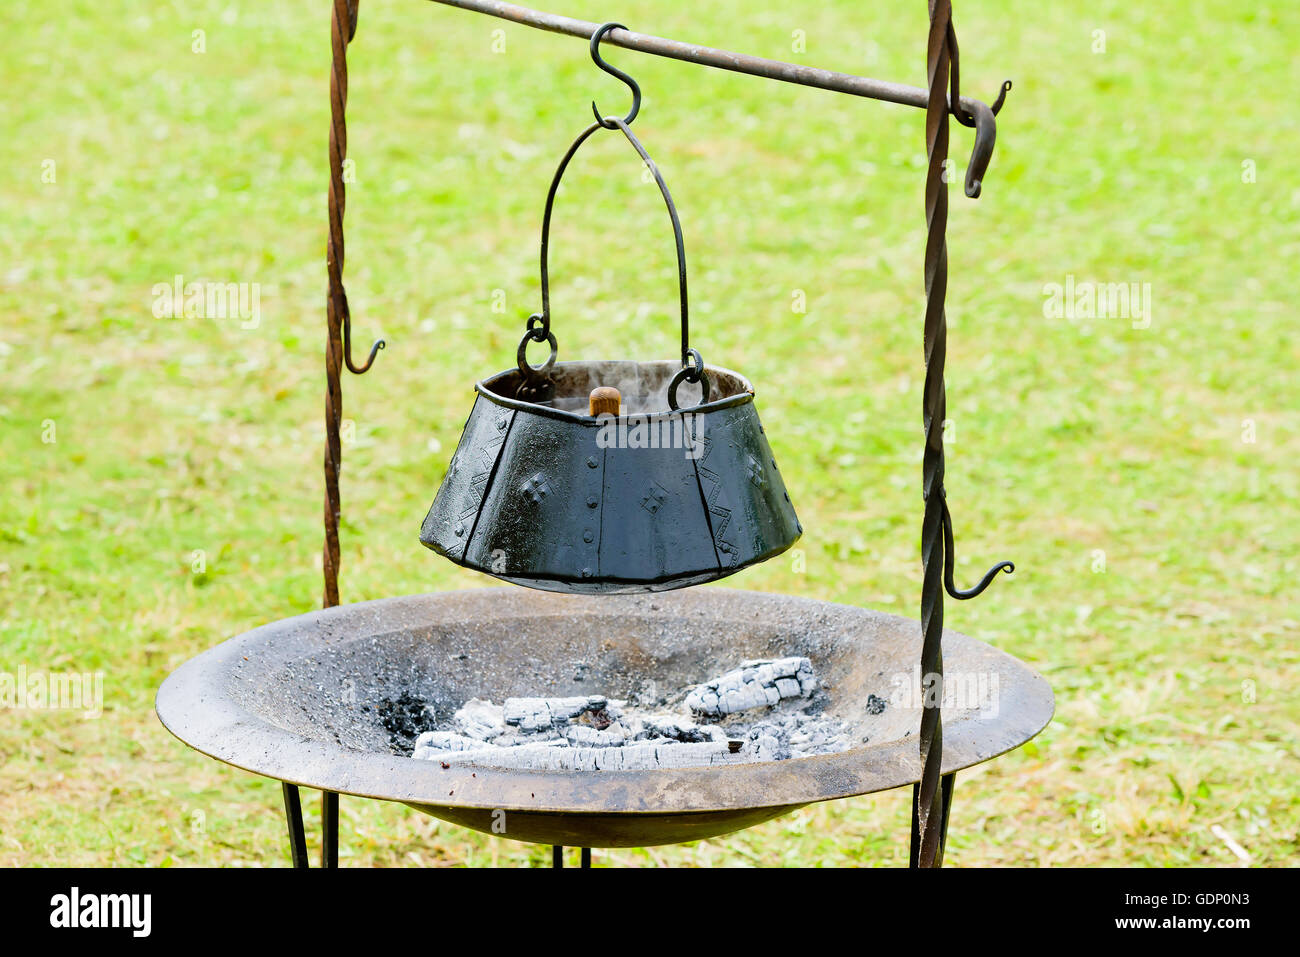 Outdoor Kochtopf schwebt über verbranntem Holz und Asche. Topf ist handgefertigt geschwärztem Eisen mit Nieten. Stockfoto